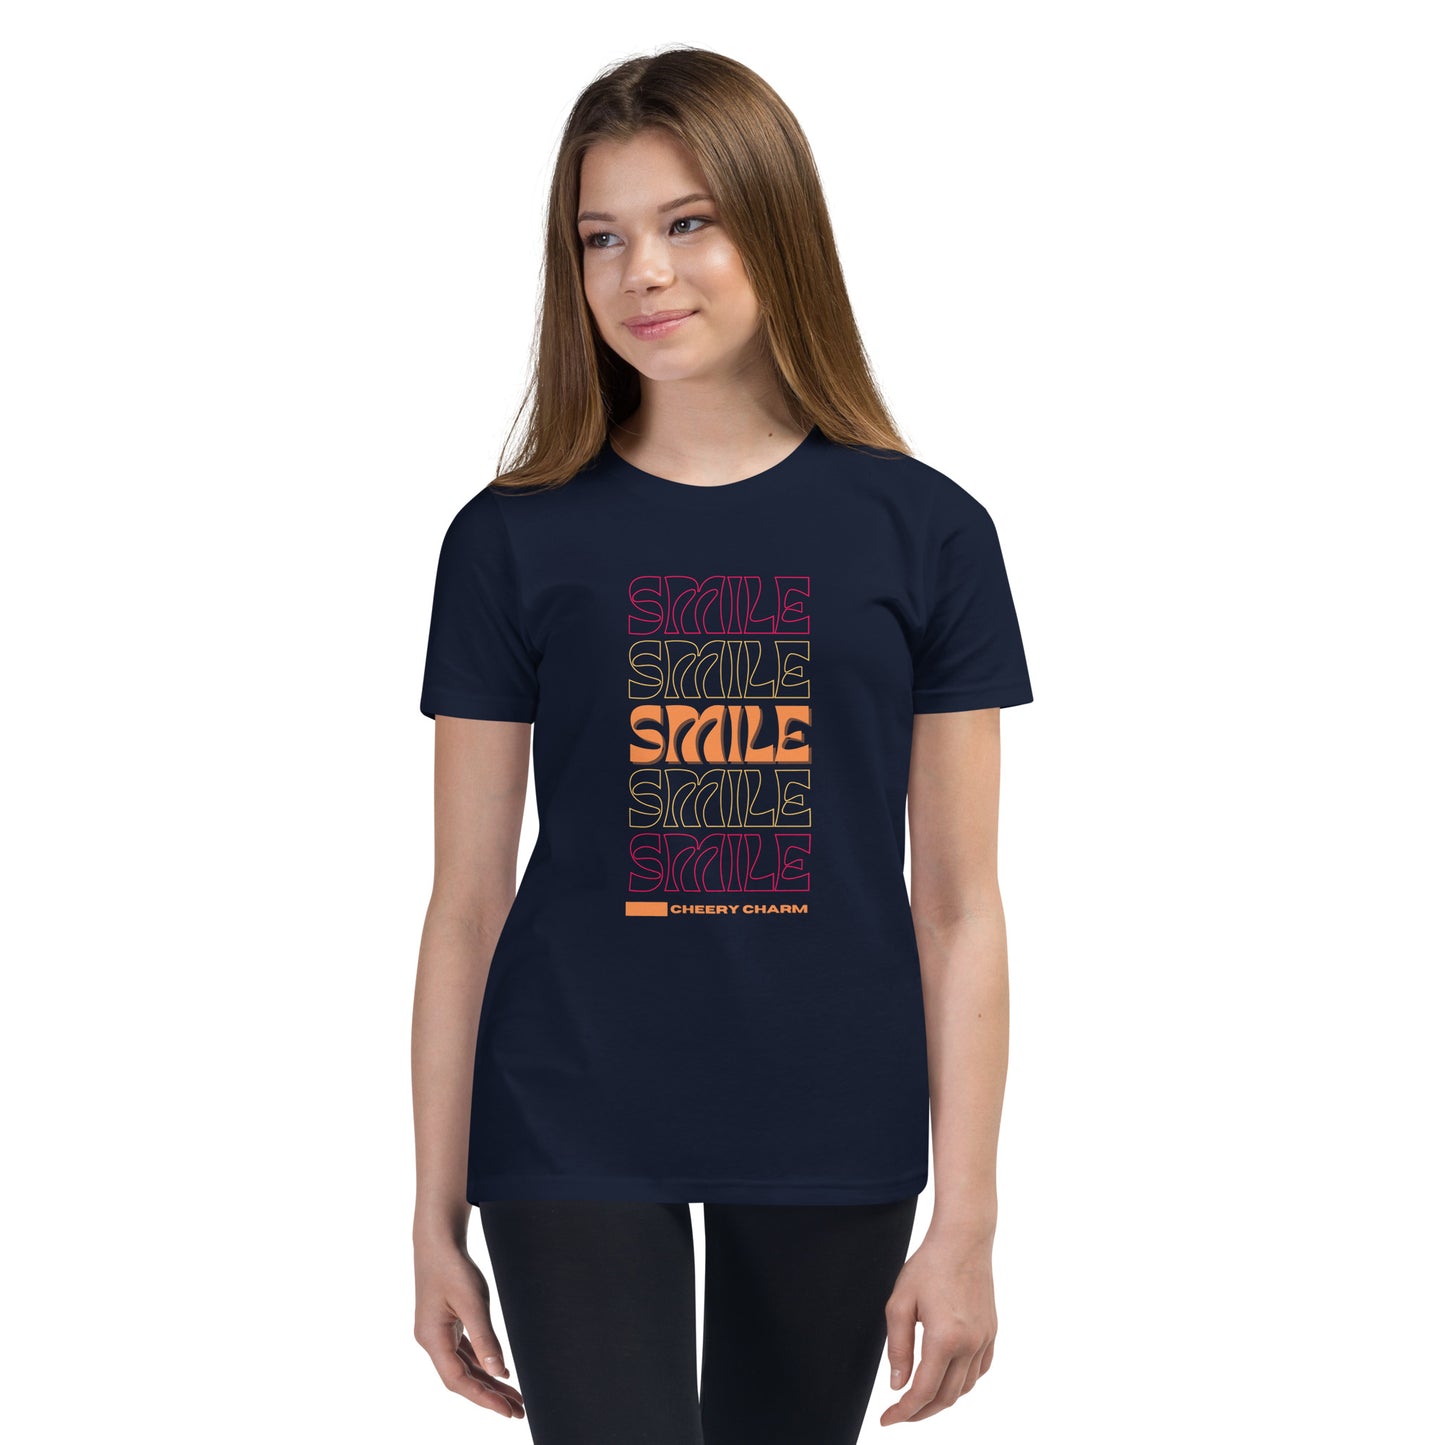 Smile, Cheery Charm - Camiseta juvenil